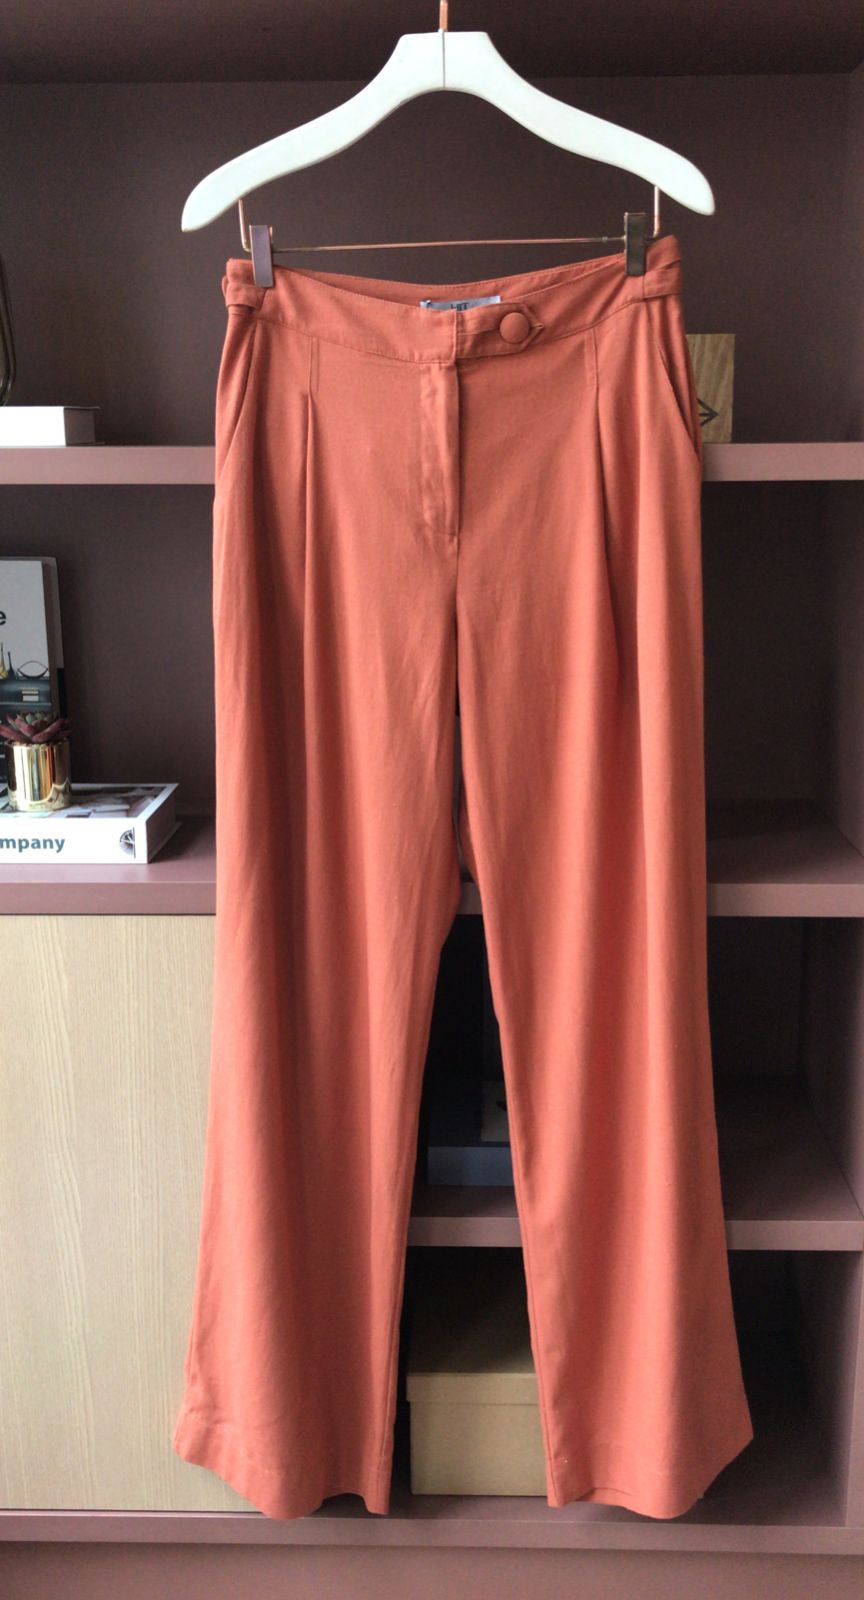 Conjunto Railey Viscolinho Blusa Manga Curta + Pantalona Detalhe Pregas